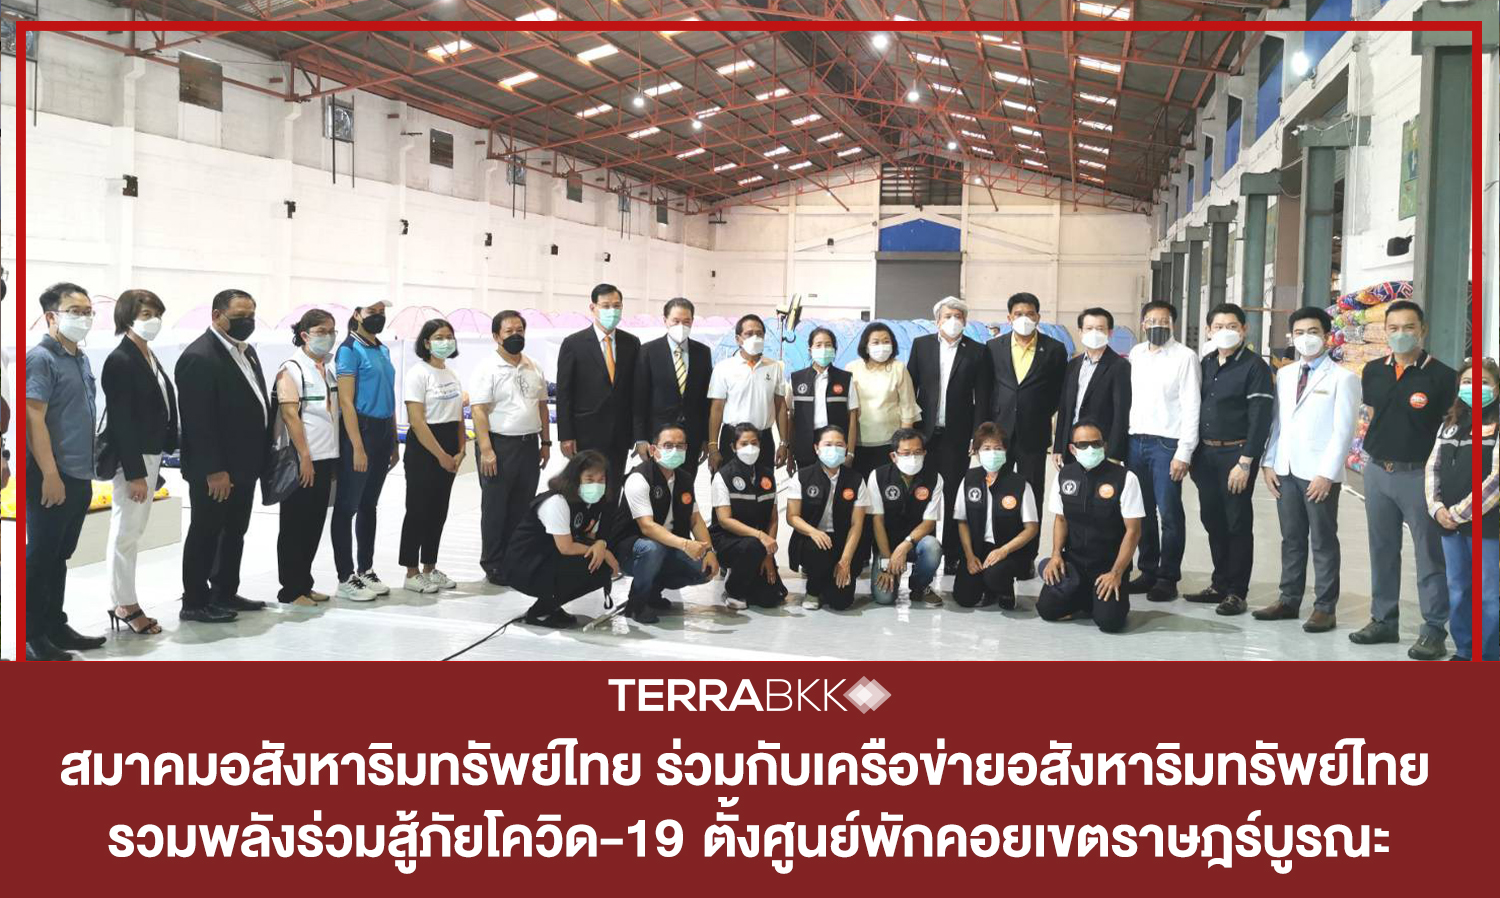 สมาคมอสังหาริมทรัพย์ไทย ร่วมกับเครือข่ายอสังหาริมทรัพย์ไทย เอกชนจับมือเข้มแข็ง รวมพลังร่วมสู้ภัยโควิด-19  ตั้งศูนย์พักคอยเขตราษฎร์บูรณะ